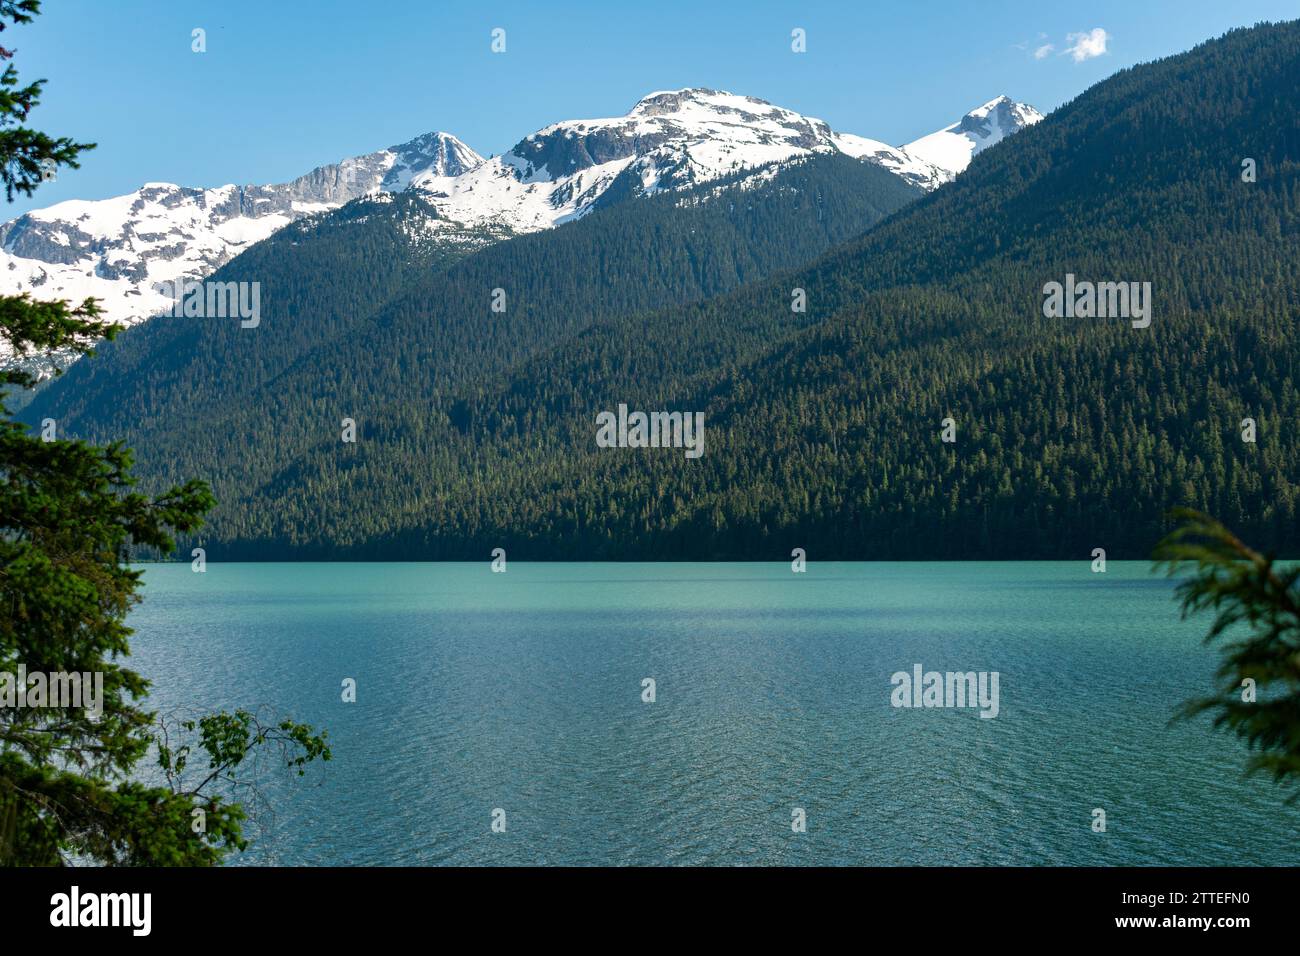 Le acque turchesi del lago Cheakamus completano i panorami innevati delle montagne della vastissima natura selvaggia della British Columbia. Foto Stock